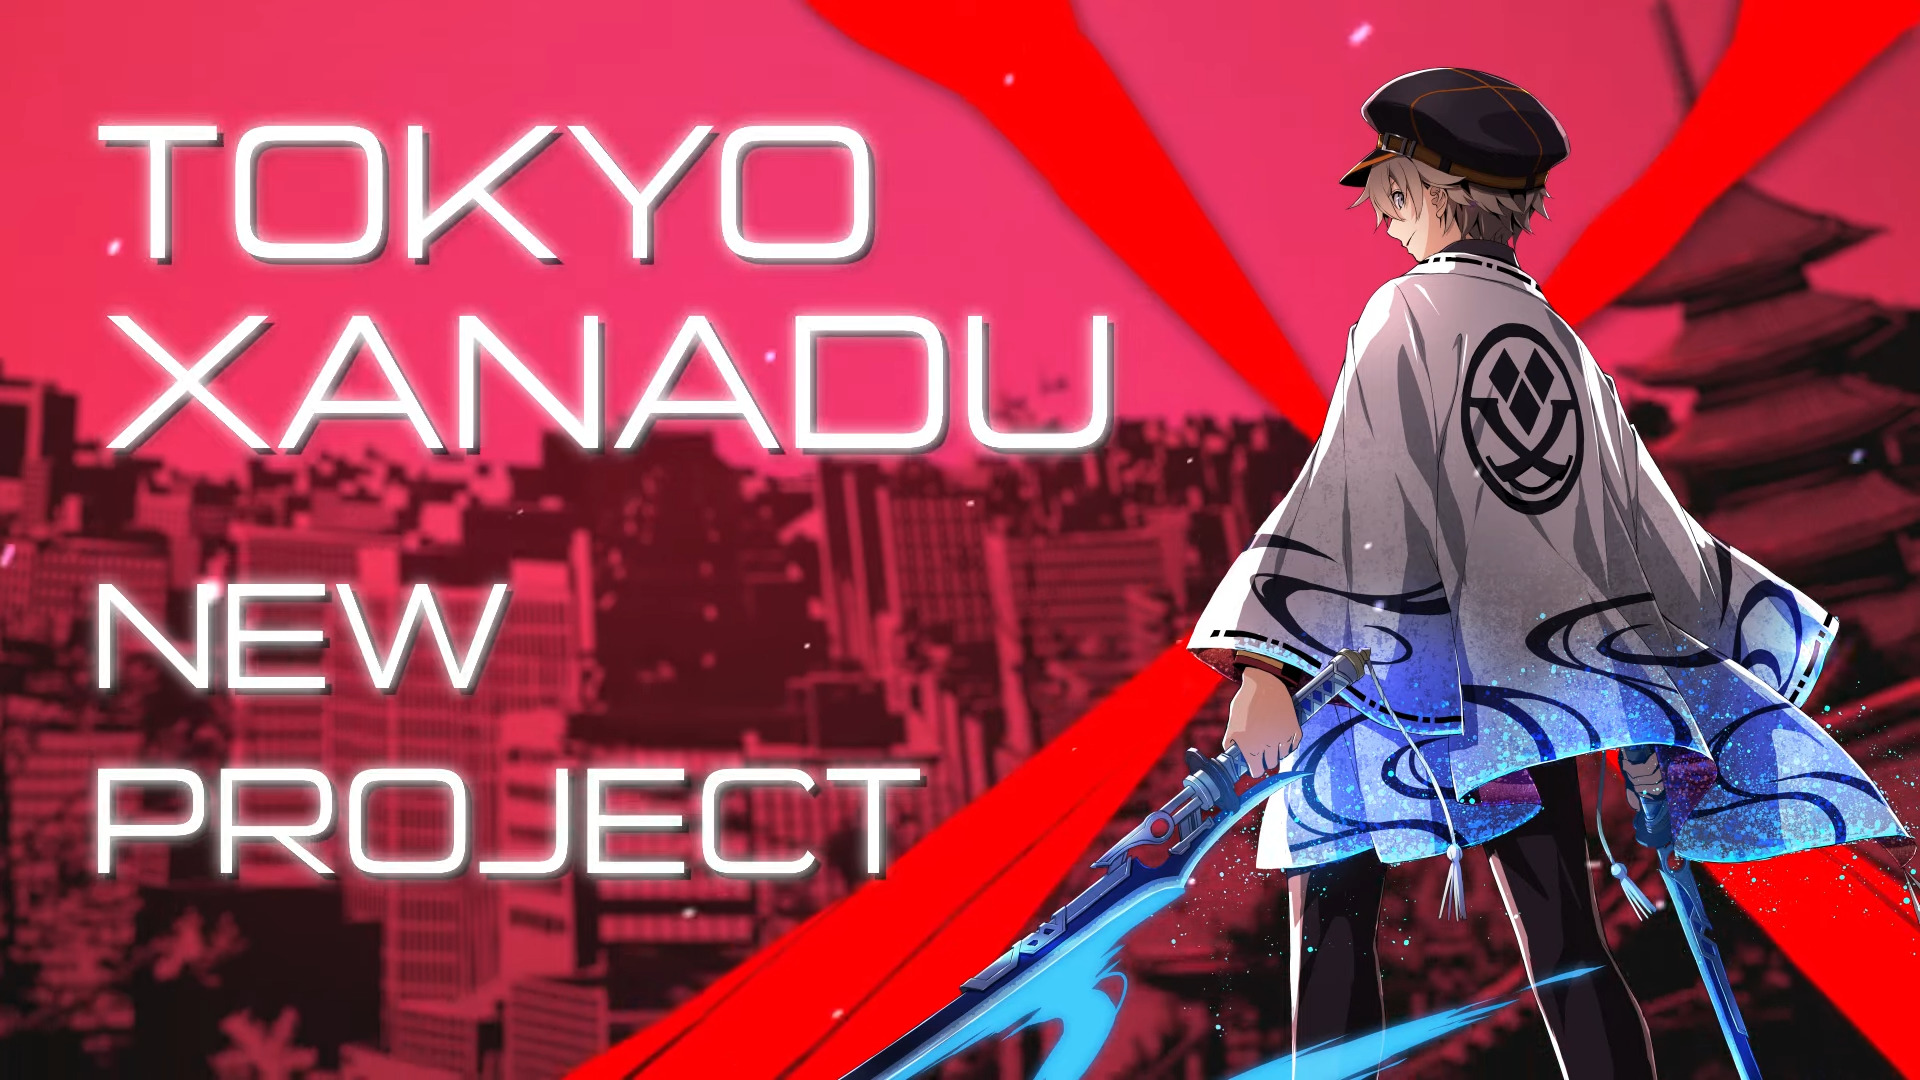 Falcom Studio kündigt neues Projekt Tokyo Xanadu an